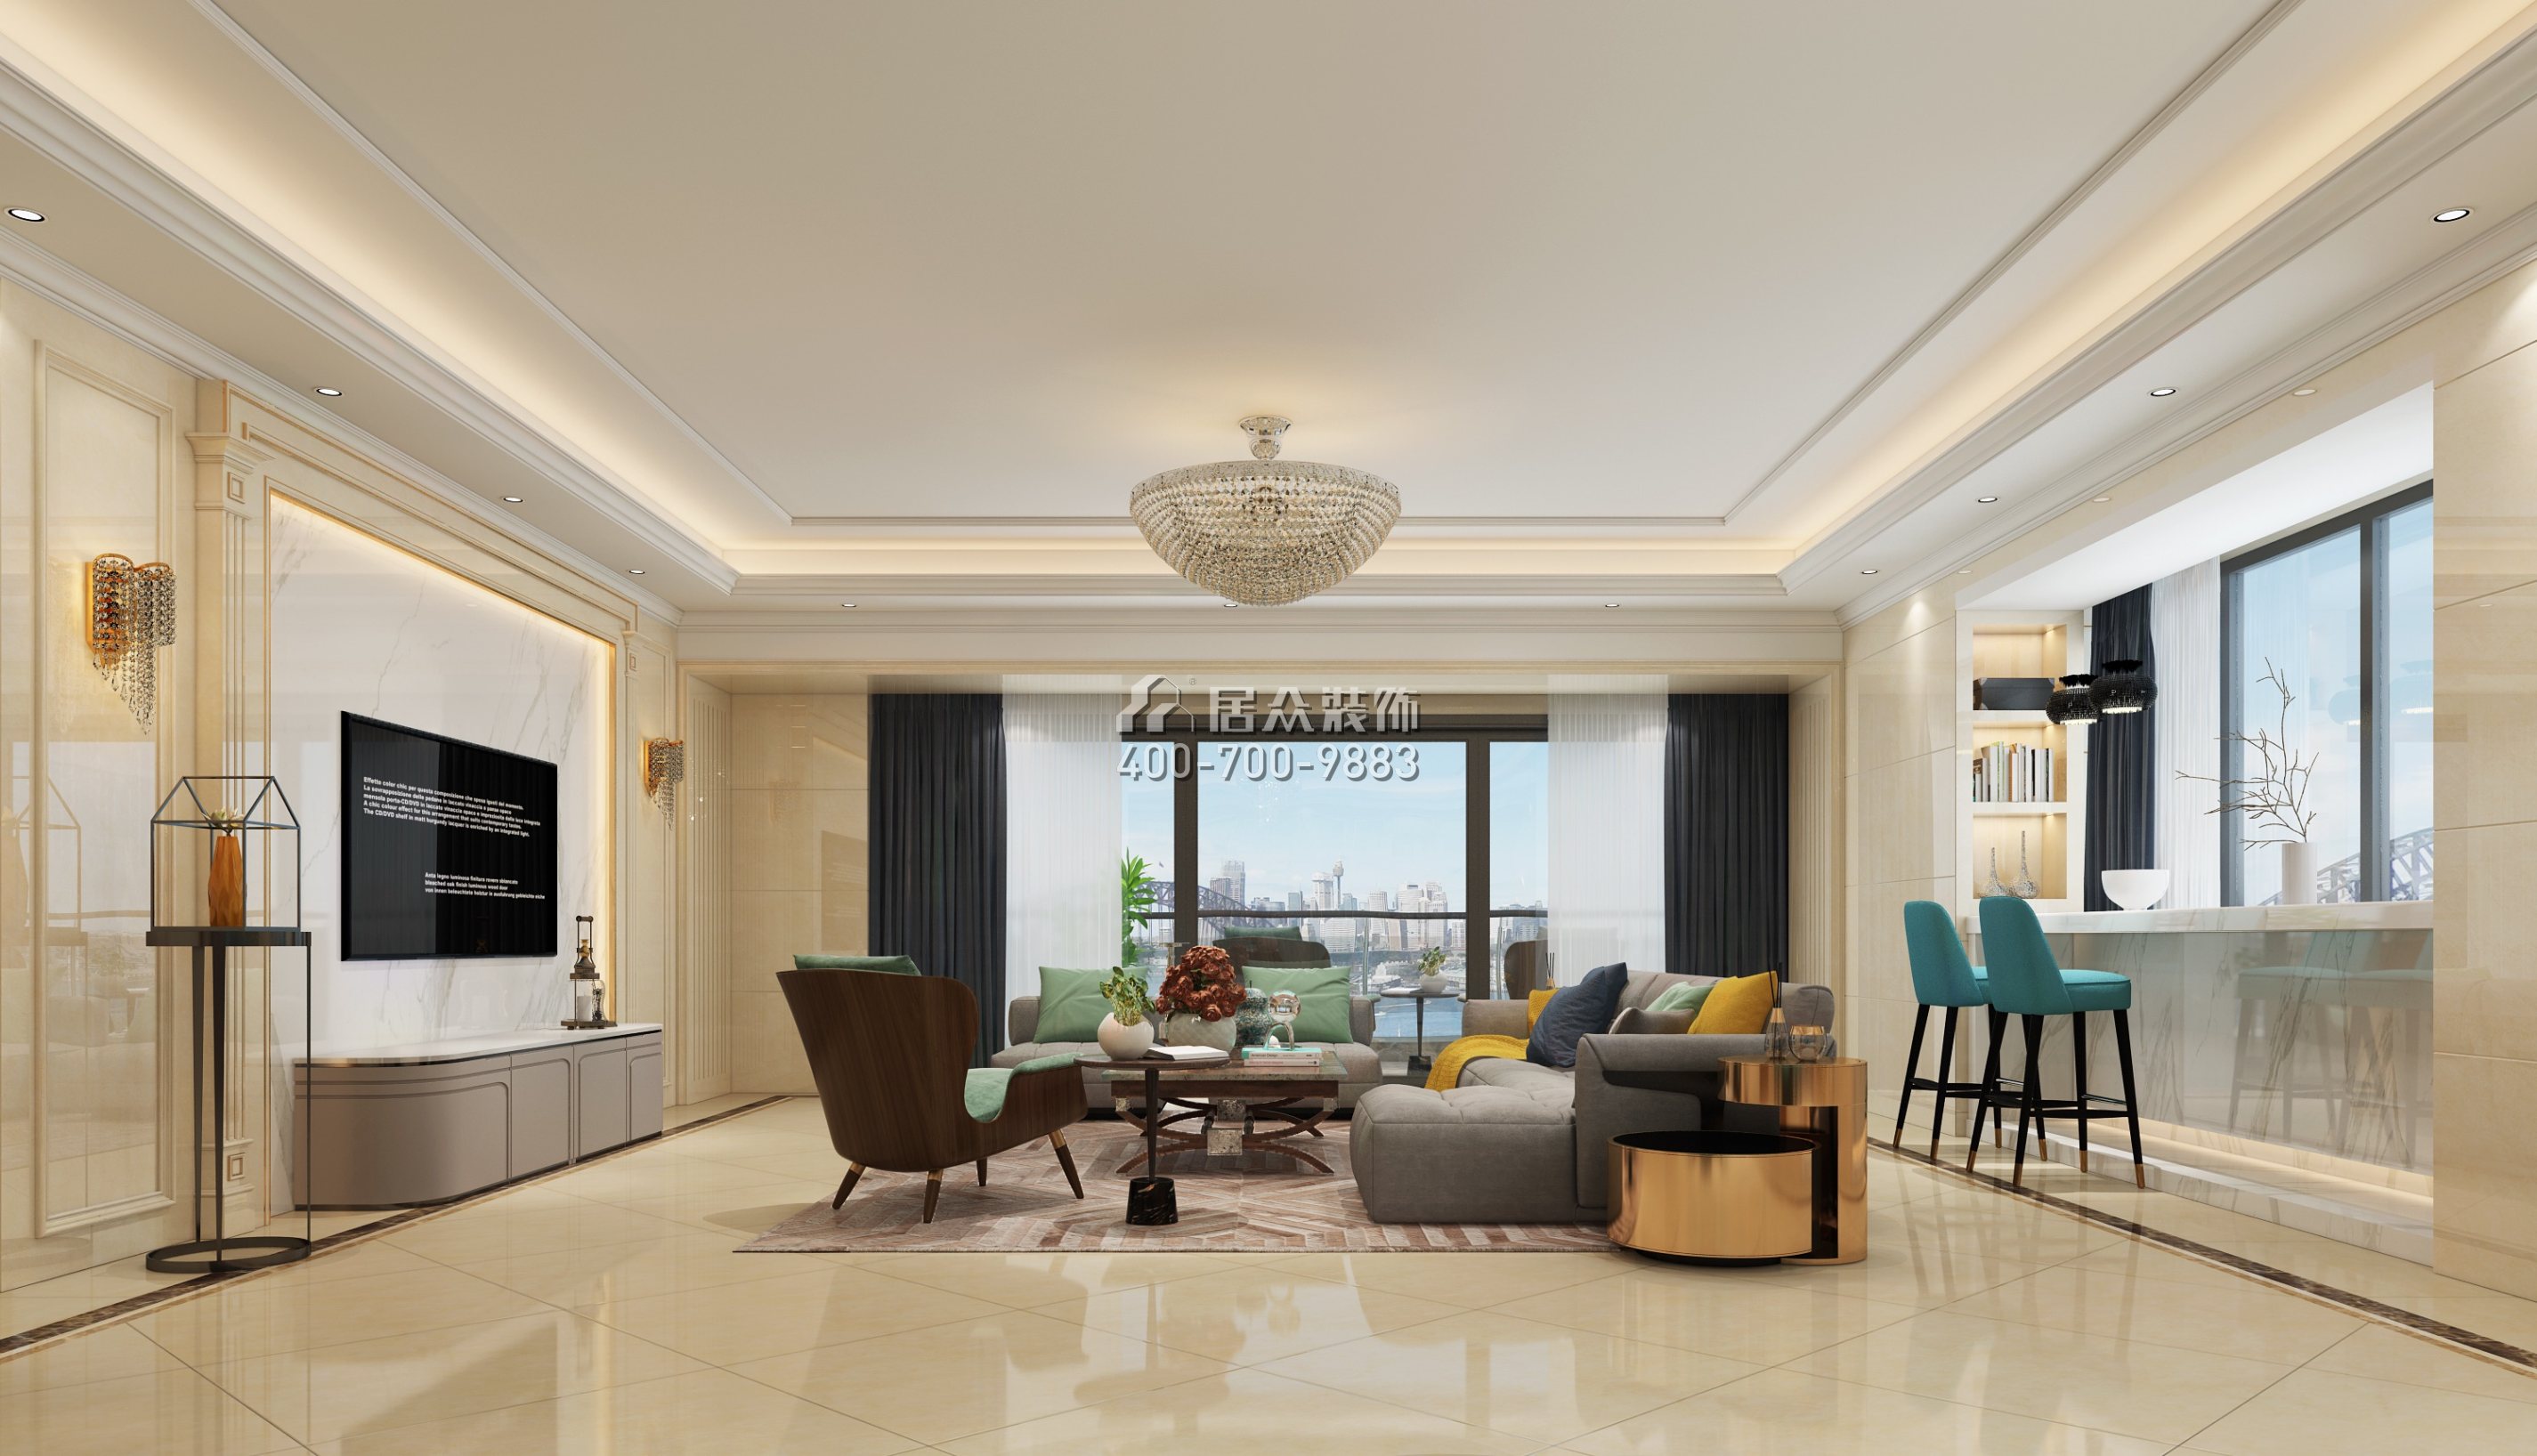 天鹅湖花园二期293平方米欧式风格平层户型客厅装修效果图